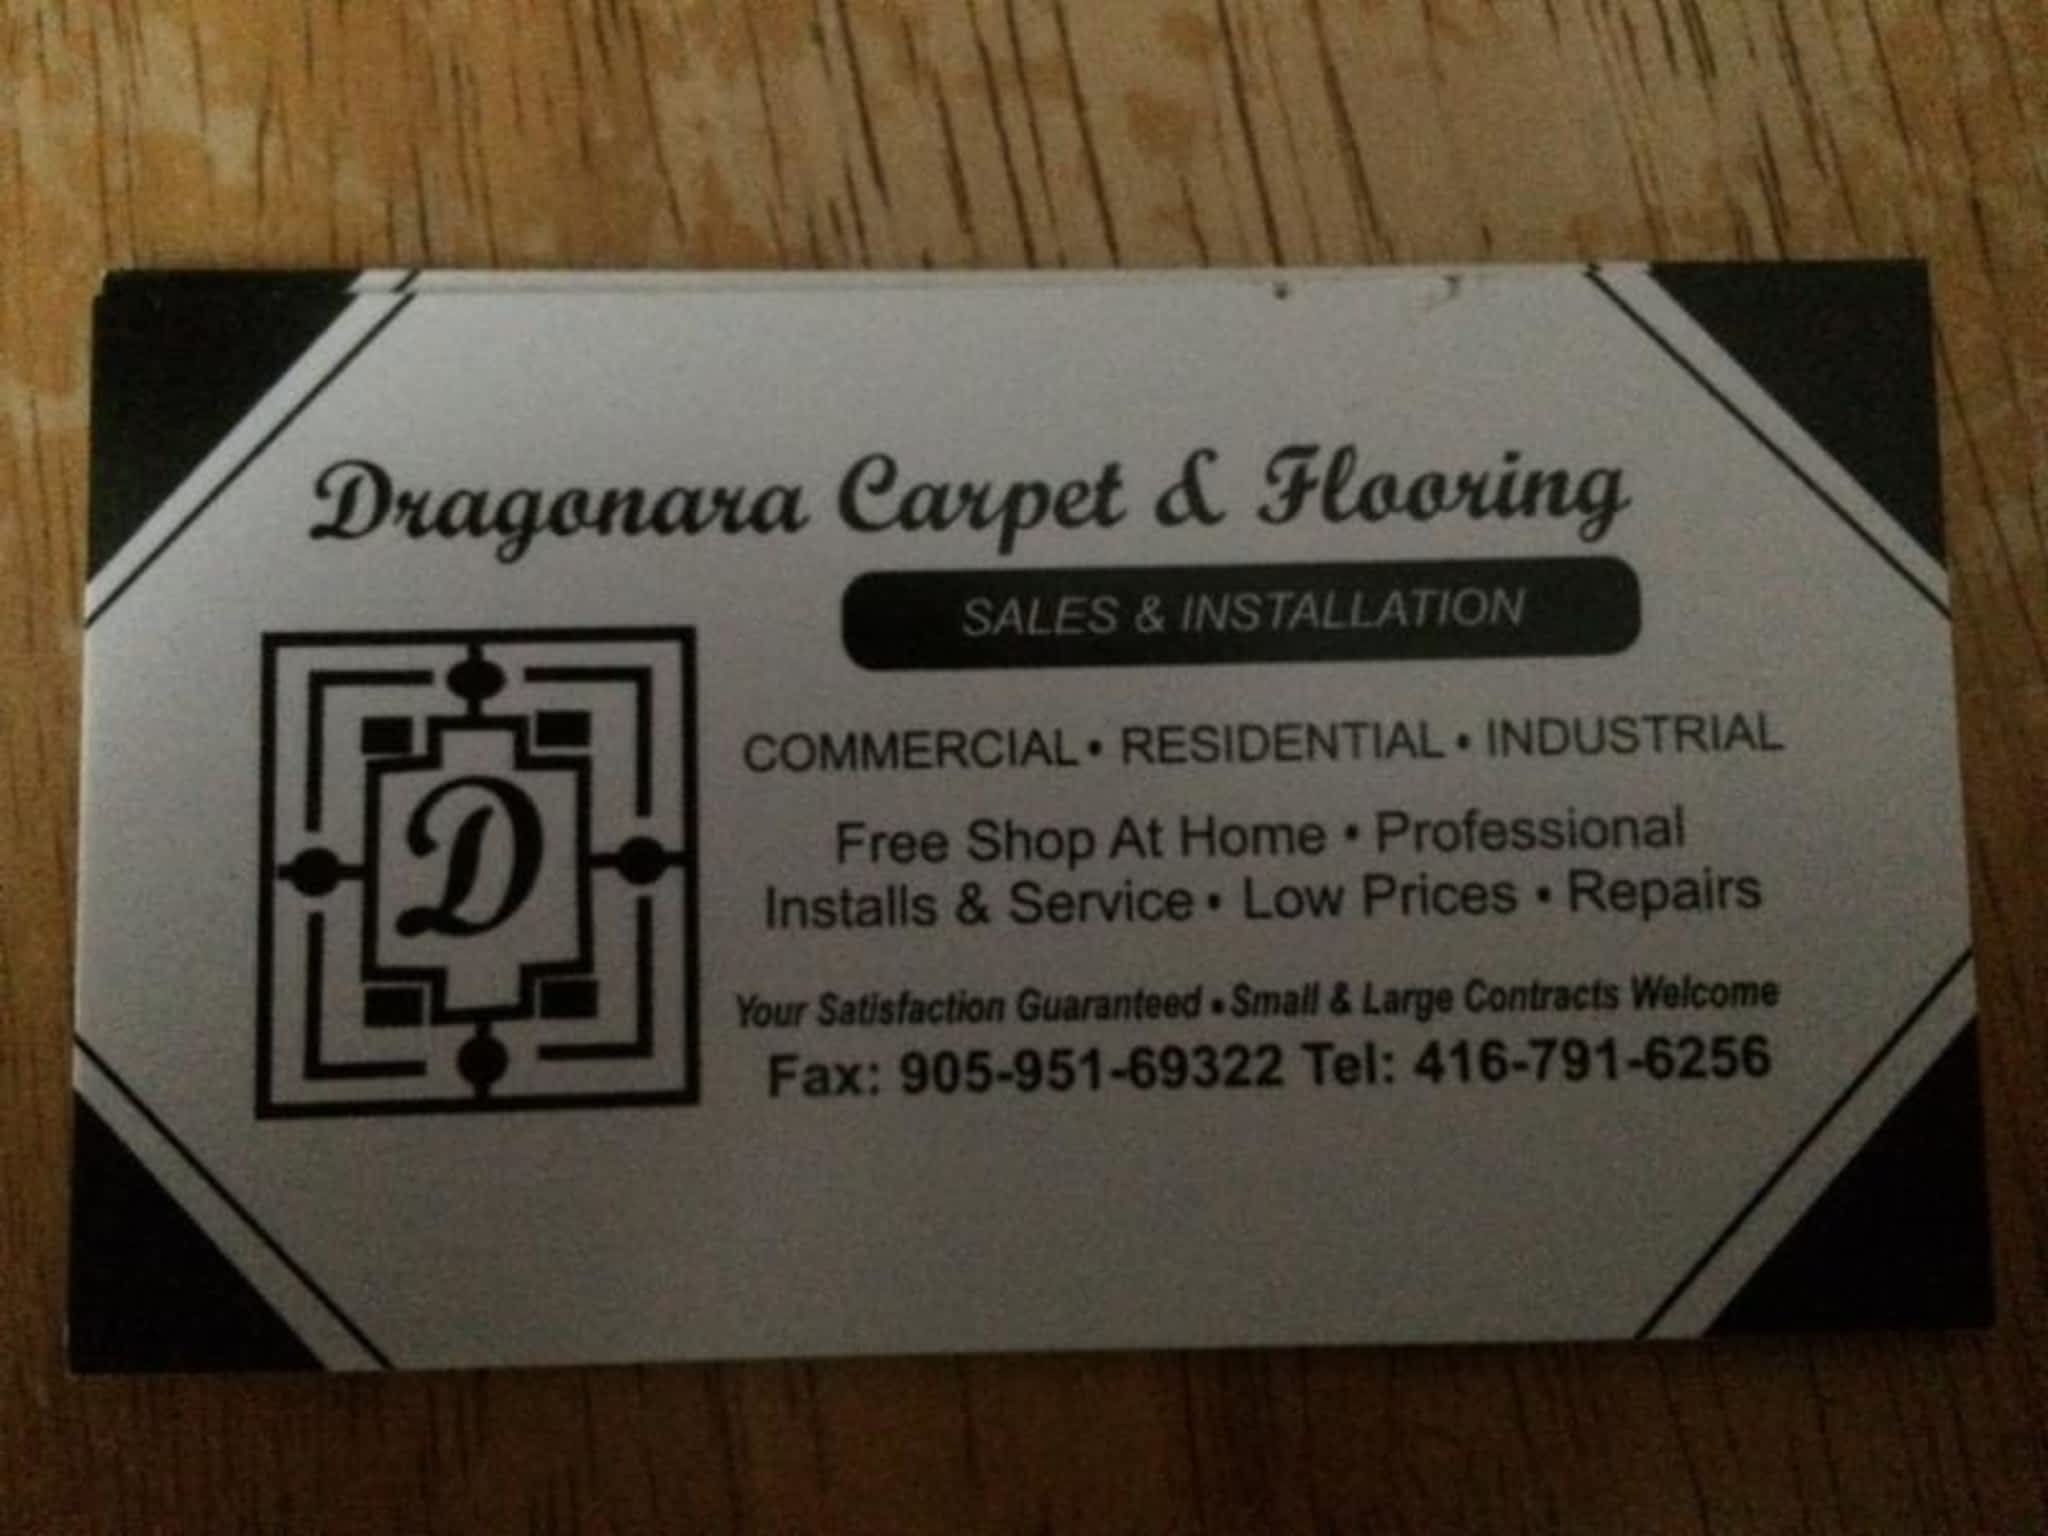 photo Dragonara Carpet & Flooring Sales & Installation